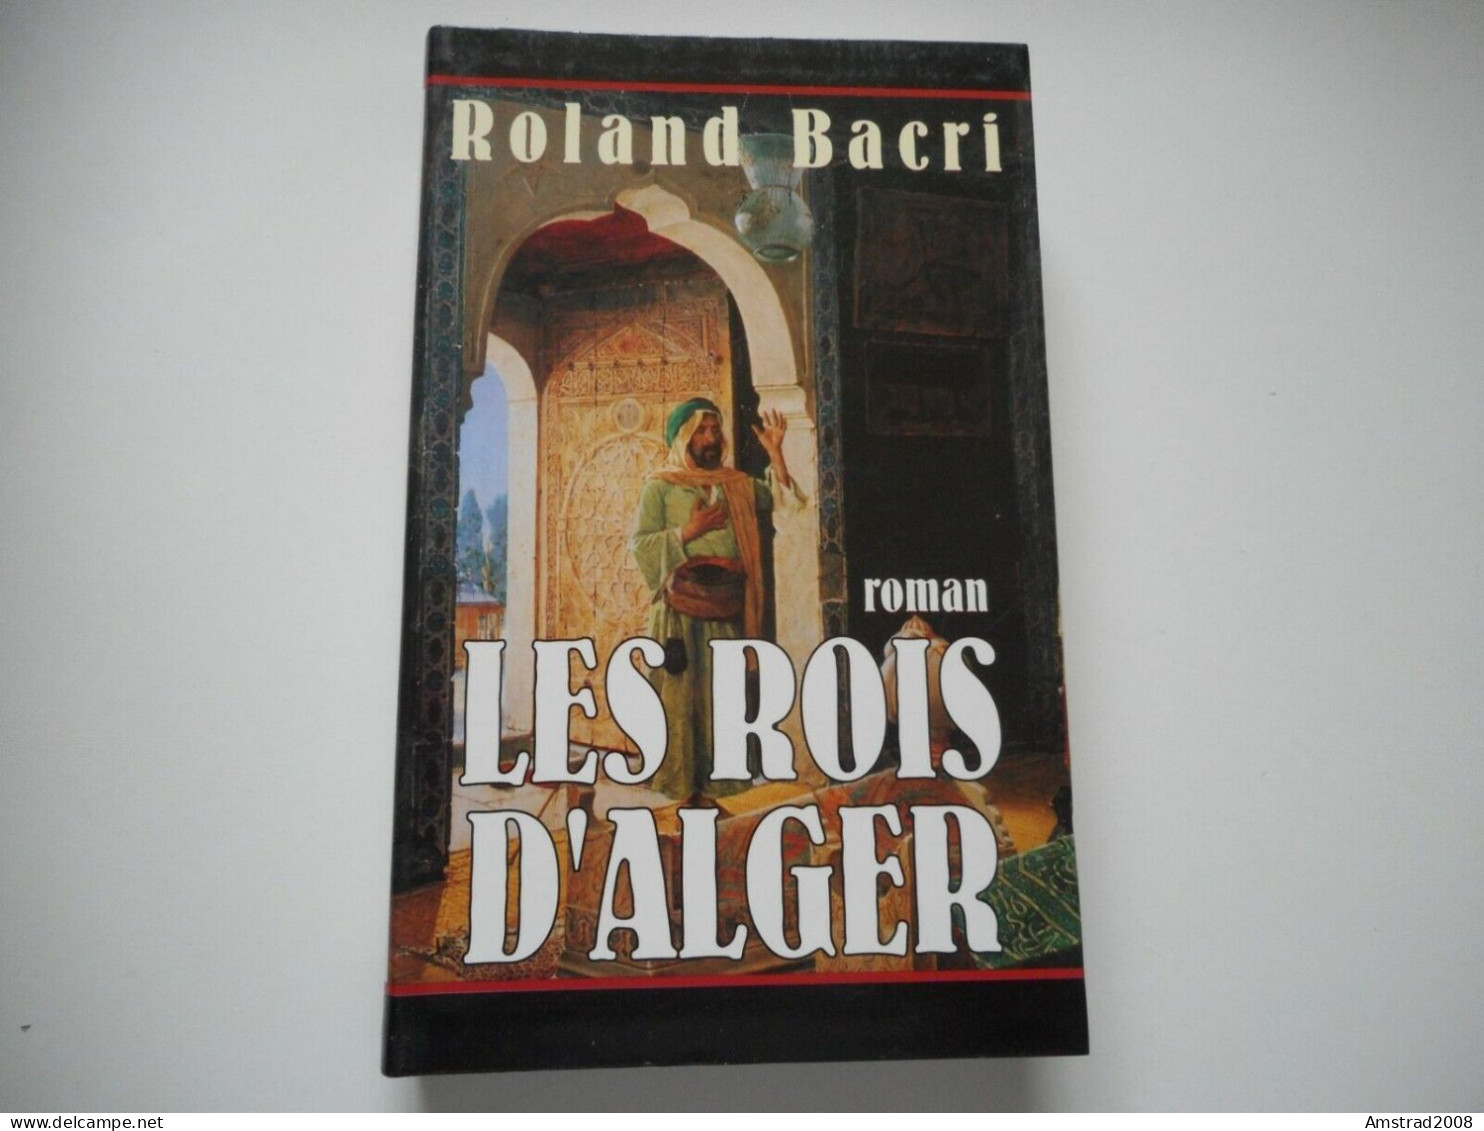 LES ROIS D'ALGER / ROLAND BACRI - ROMAN (Cercle Maxi-livres) - ALGER LA REGENCE - ALGERIE - ALGERIA - Geschichte, Philosophie, Geographie